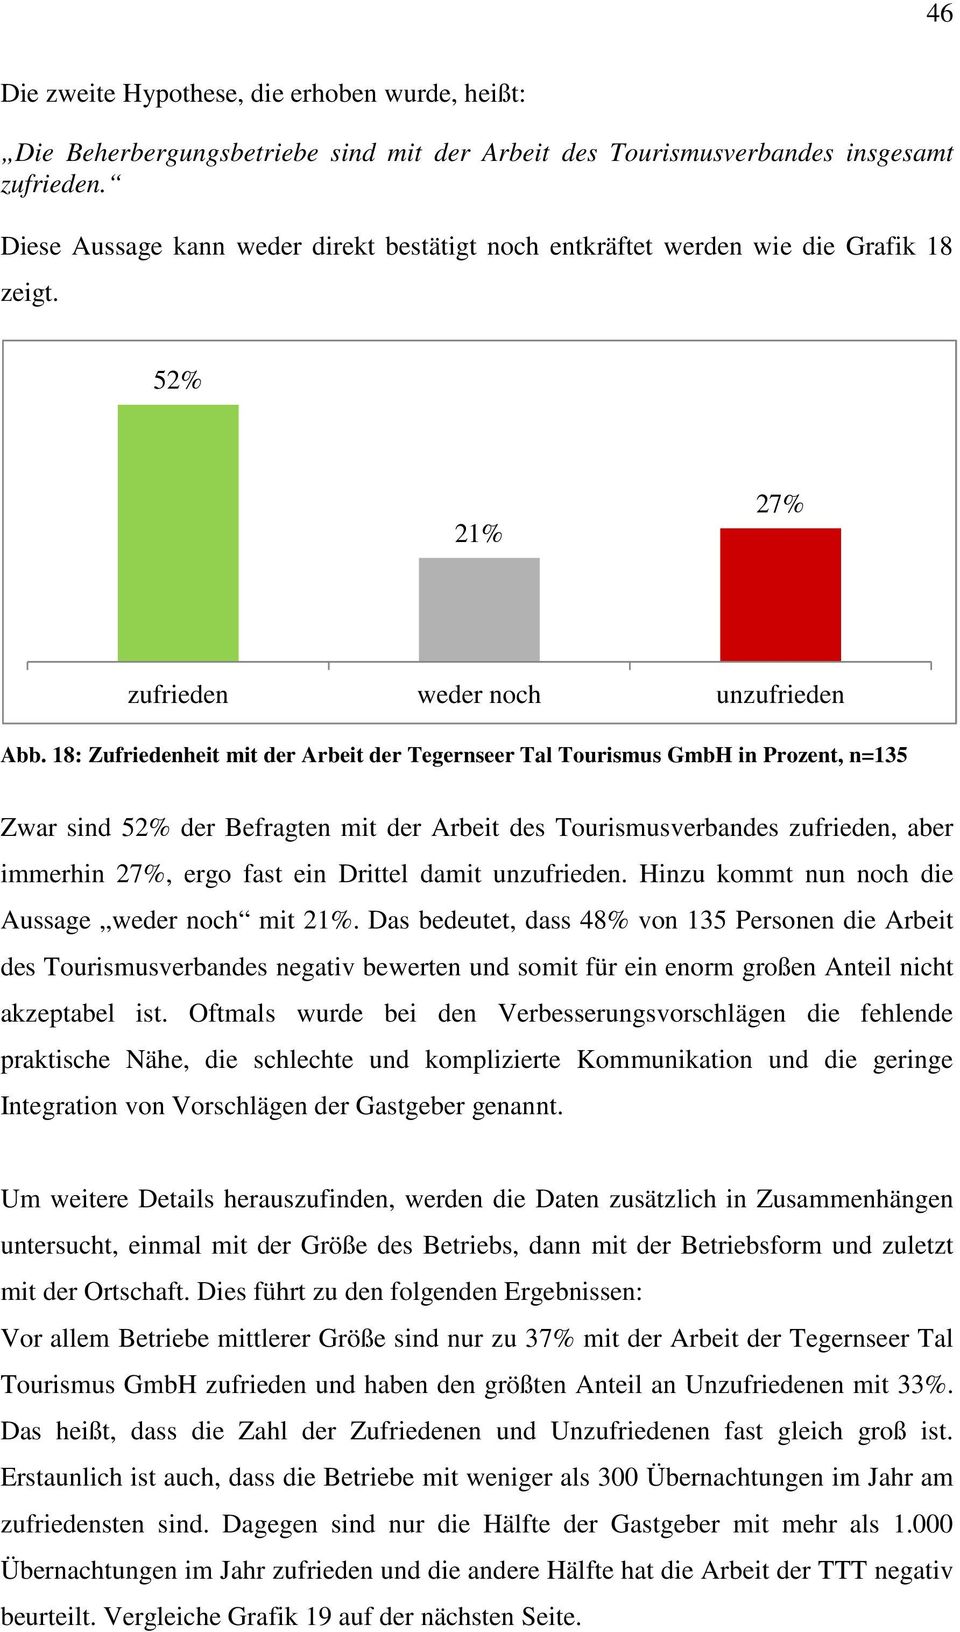 18: Zufriedenheit mit der Arbeit der Tegernseer Tal Tourismus GmbH in Prozent, n=135 Zwar sind 52% der Befragten mit der Arbeit des Tourismusverbandes zufrieden, aber immerhin 27%, ergo fast ein